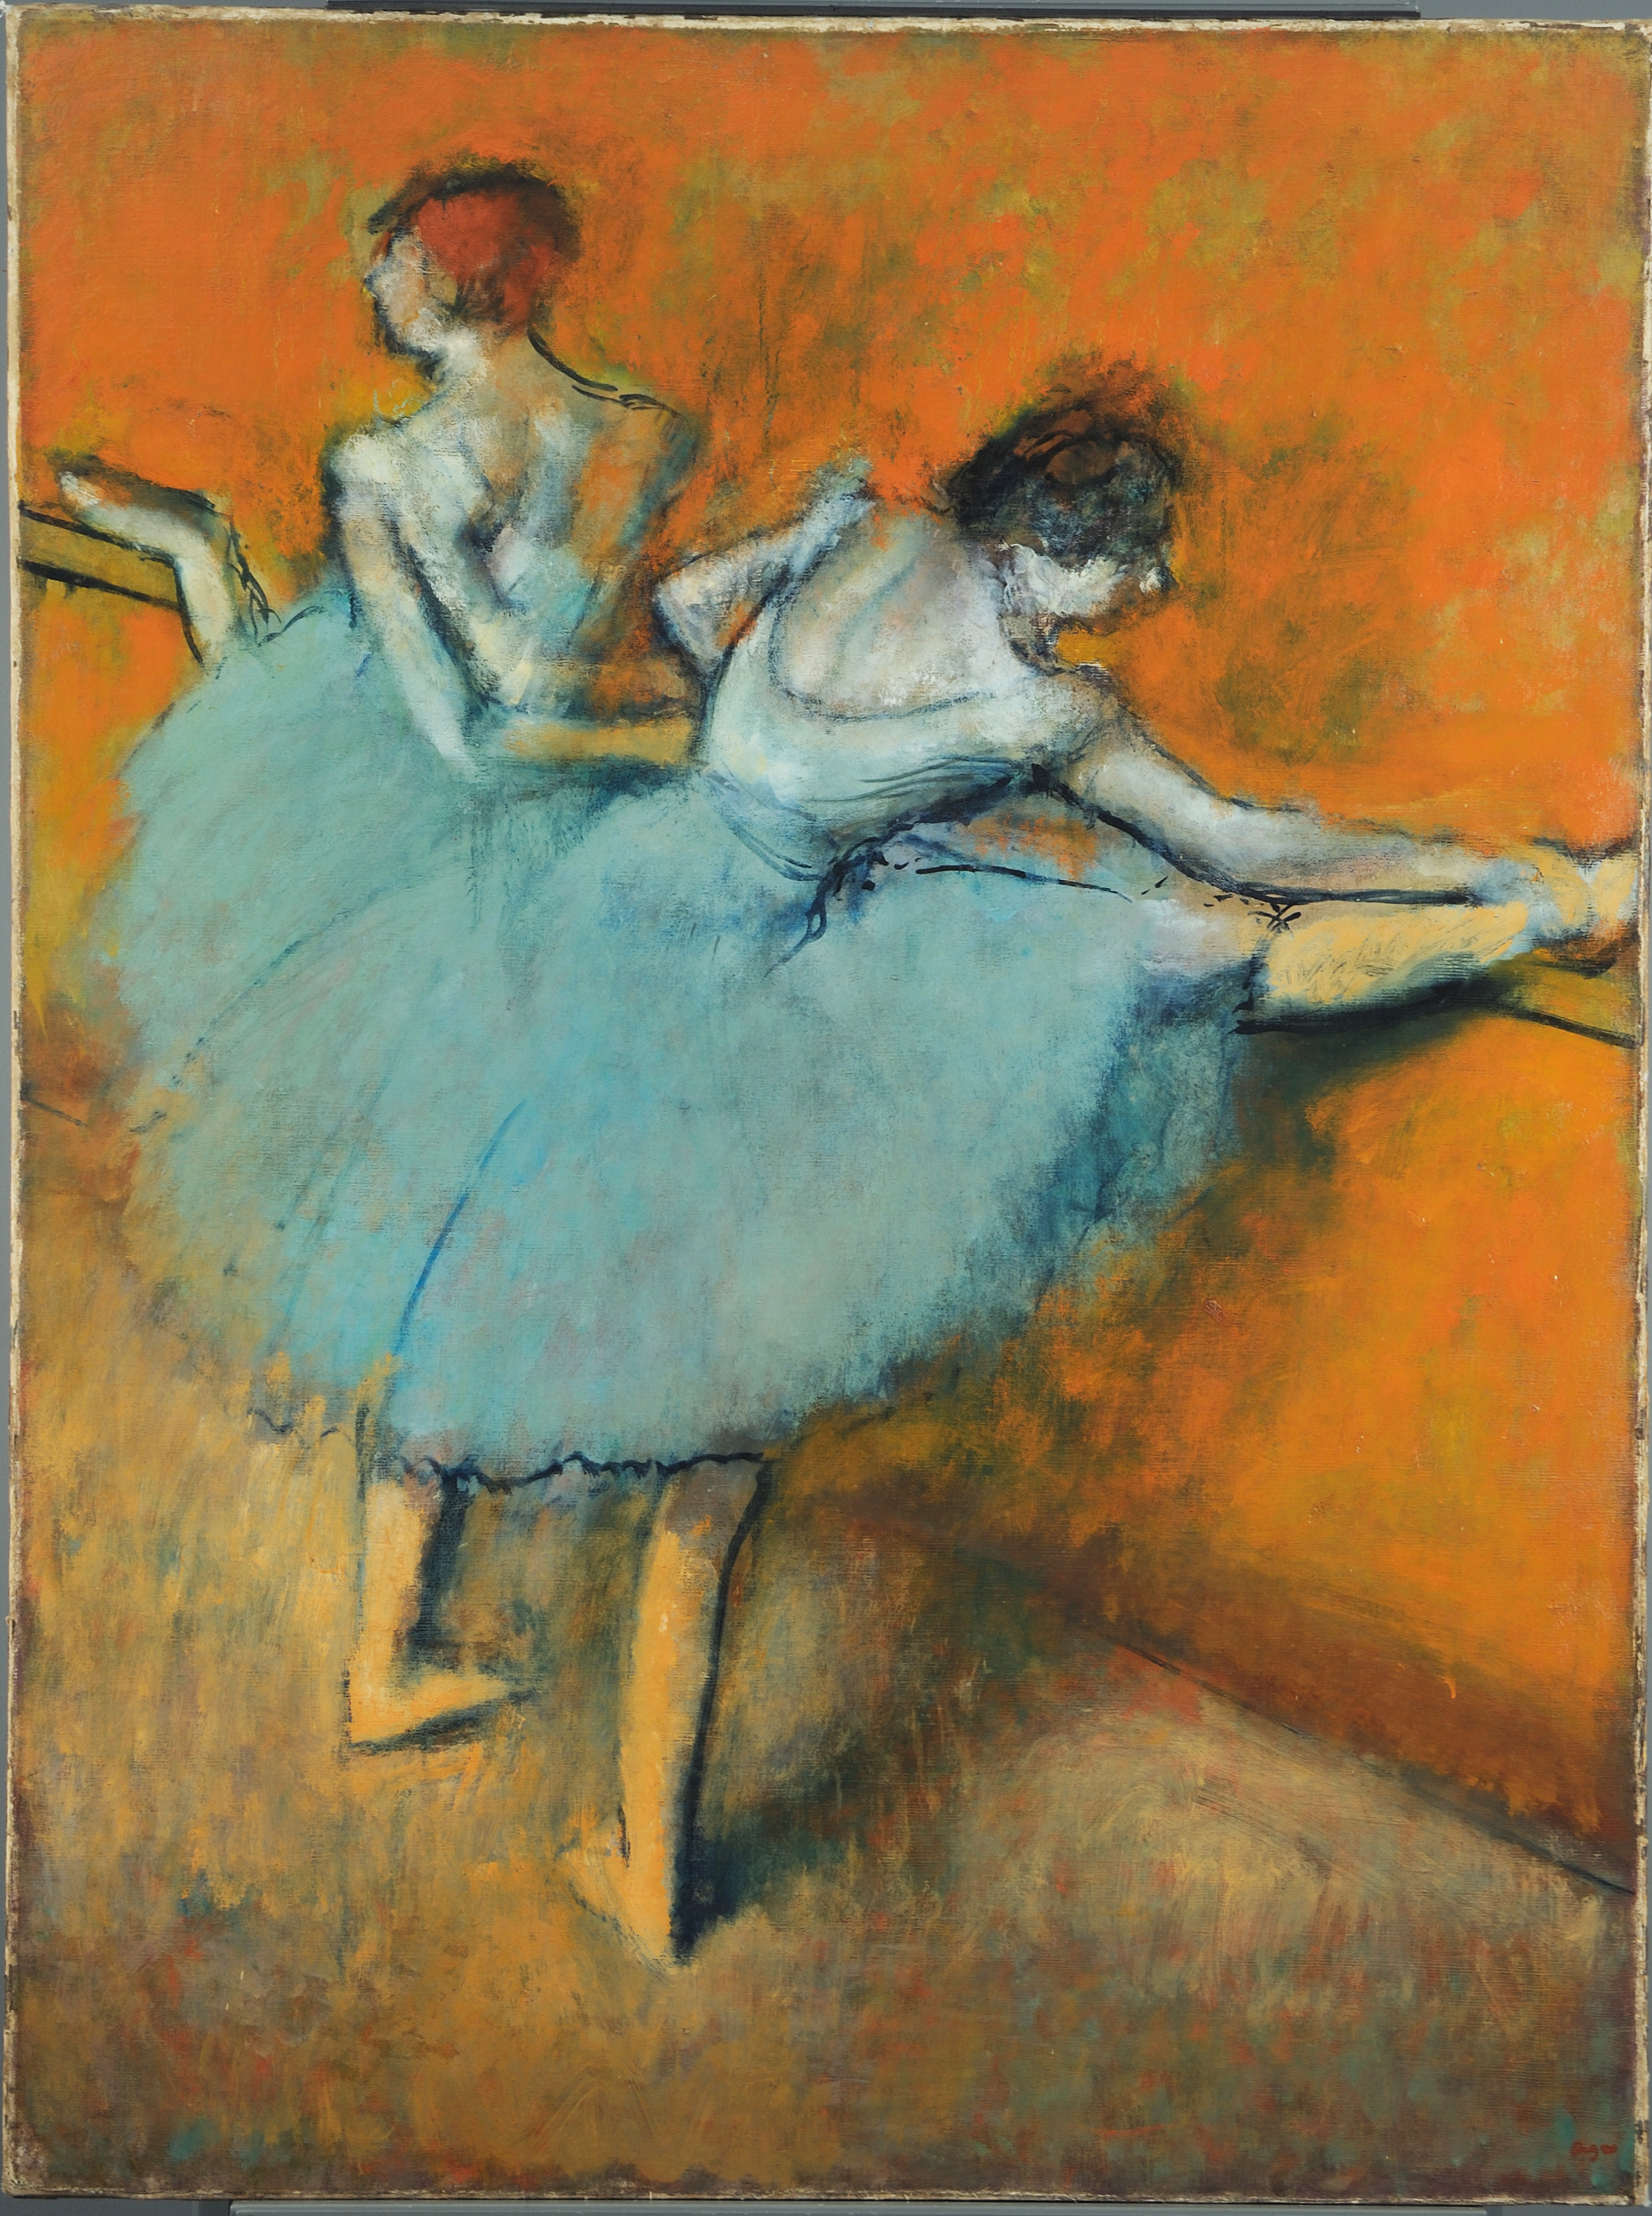 Bailarinas en la barra by Edgar Degas - ca. 1900 - 51 1/4 x 38 1/2 in Colección Phillips